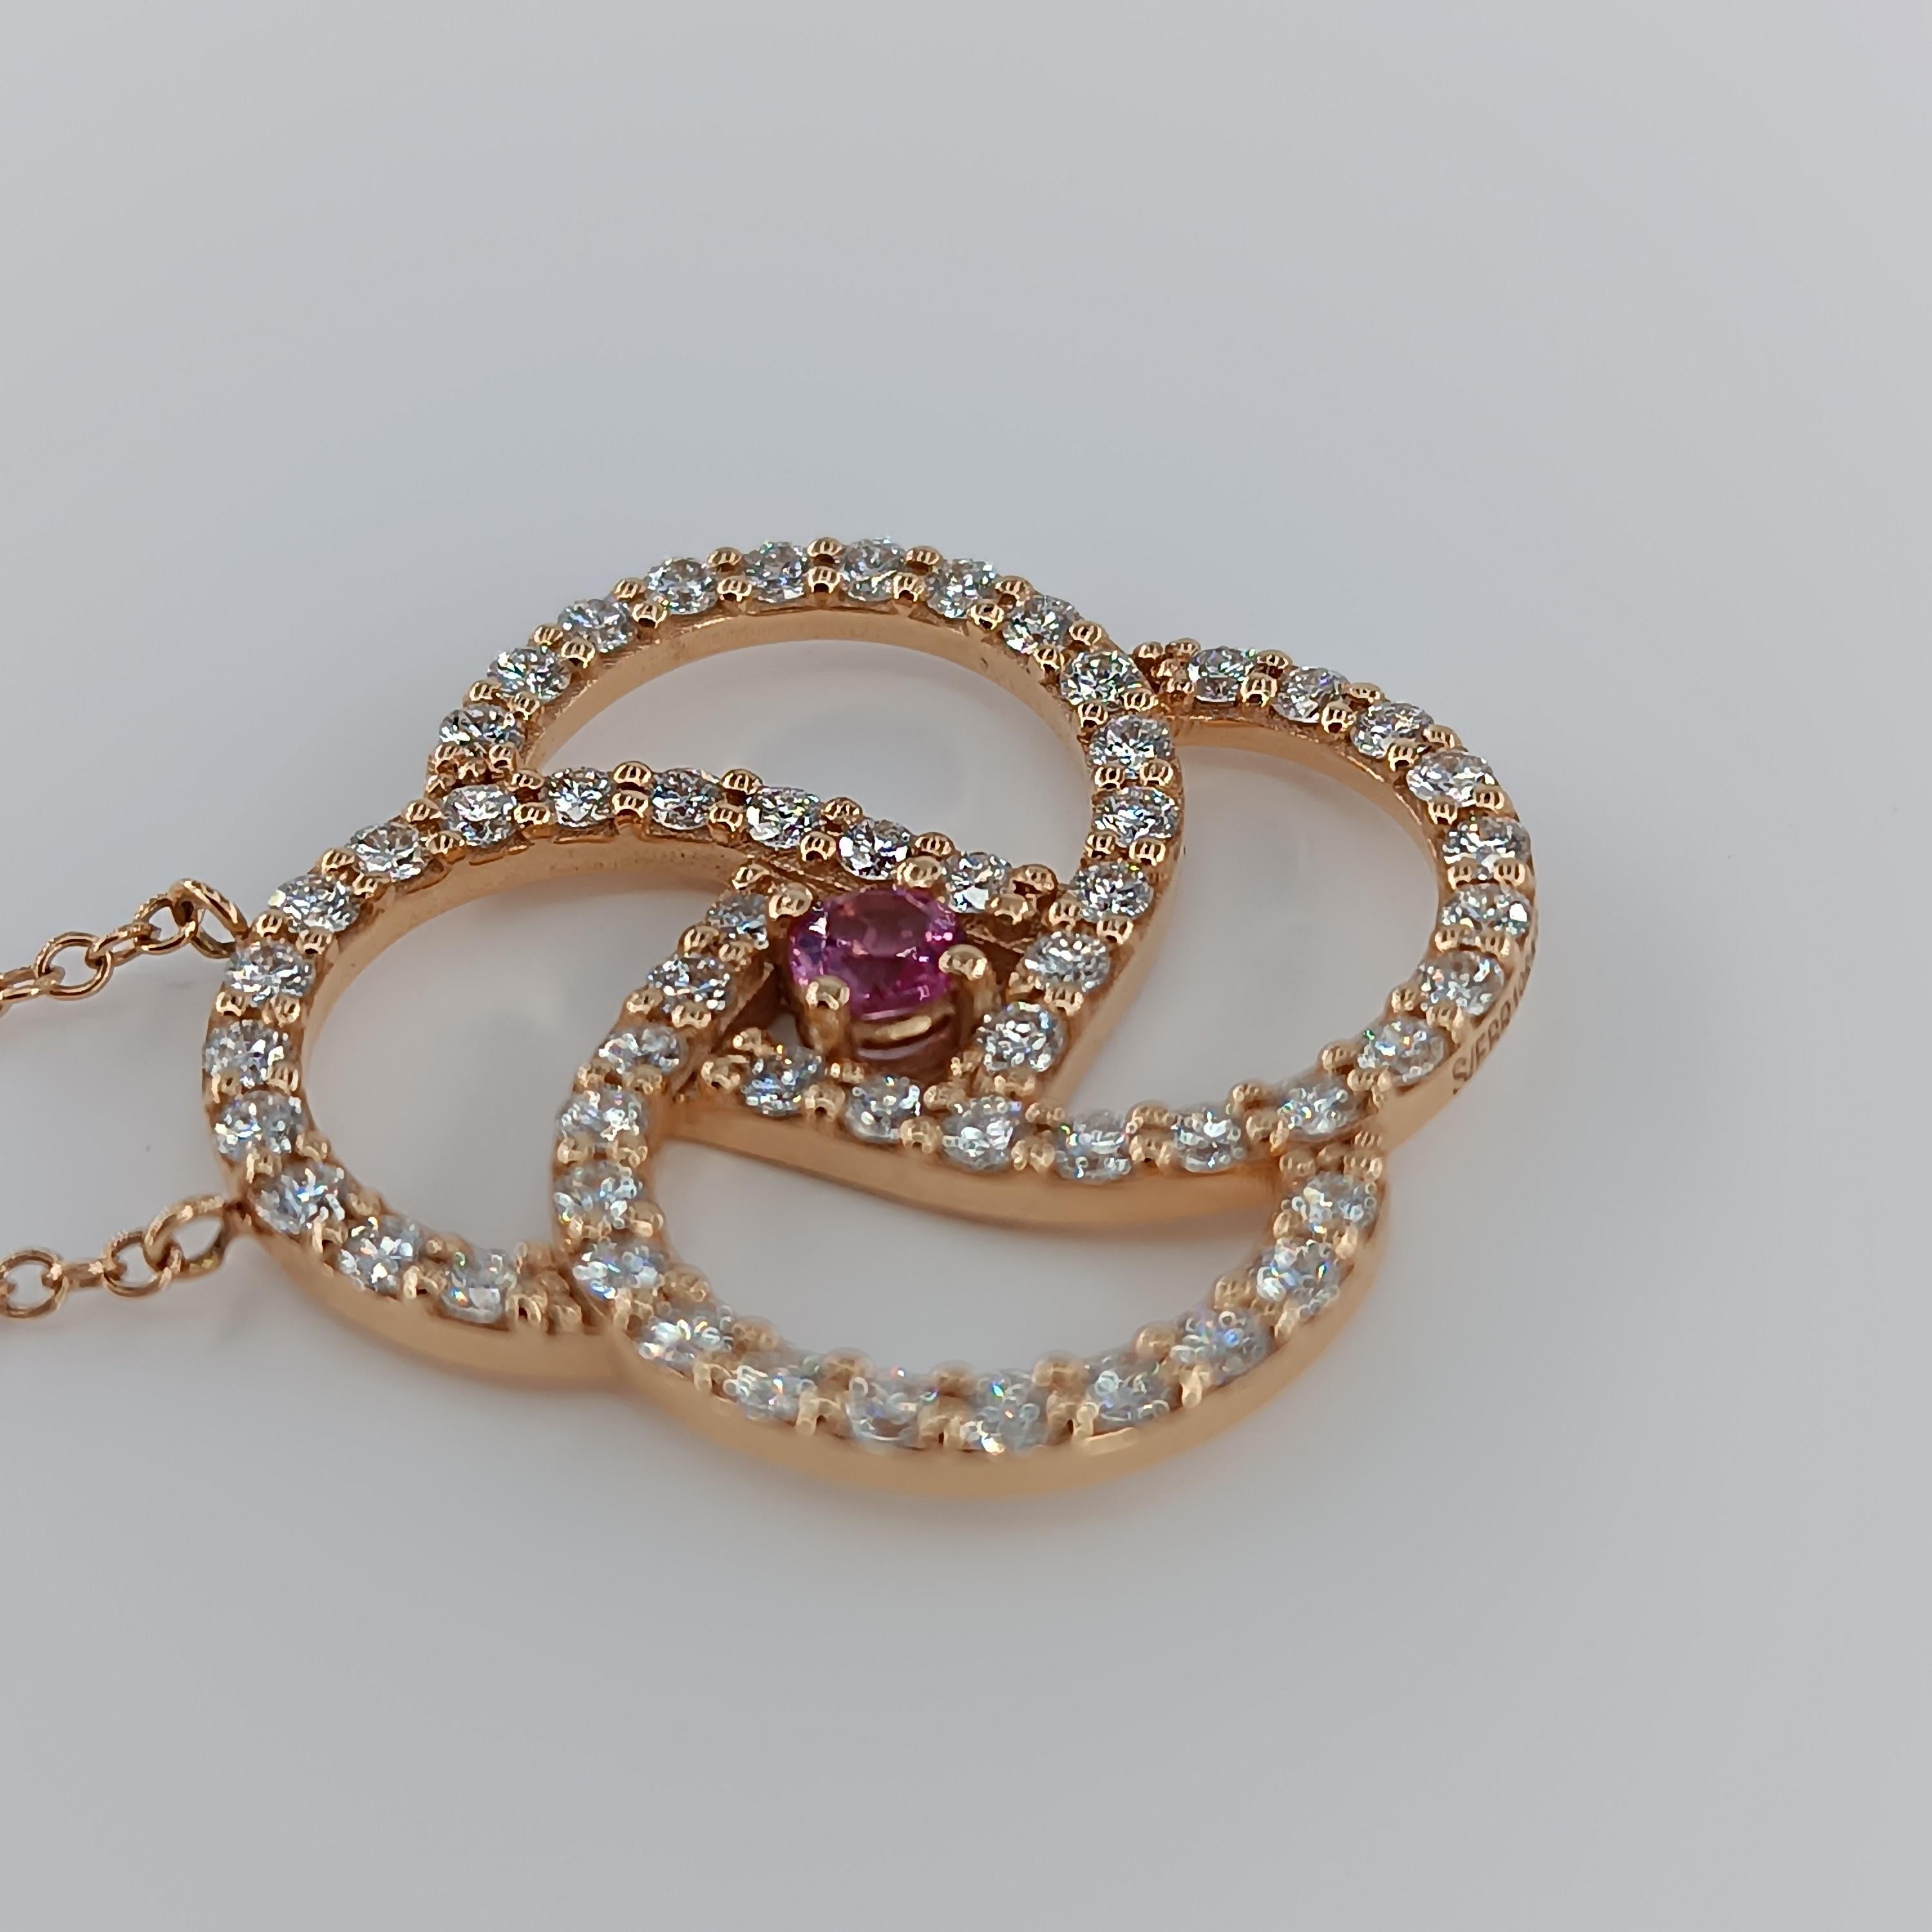 Dieser wunderschöne Anhänger aus 18 Karat Roségold (9,92 Gramm) verfügt über einen zentralen  rosa Saphir  von 0,25 Karat und 56 Diamanten der Farbe VS G mit einem Gesamtgewicht von 1,68 Karat. 
Jedes Stück unserer Schmuckkollektion hat eine